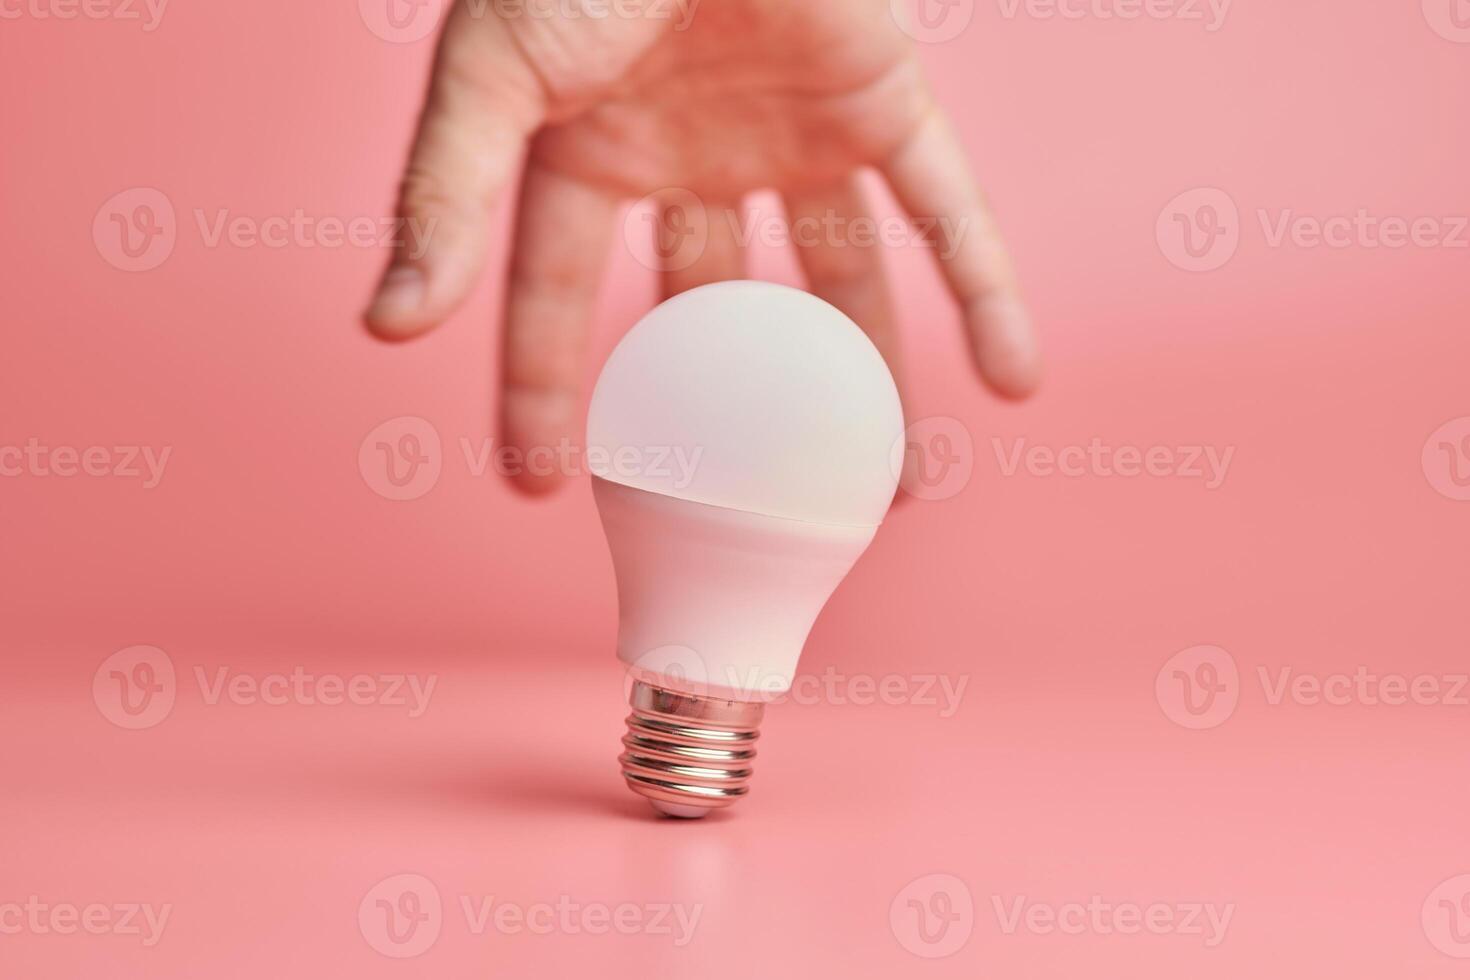 ljus Glödlampa och hand, aning fångst begrepp. symbol av ny evenemang eller upptäckt lösningar till problem. kreativ minimal innovationer. foto